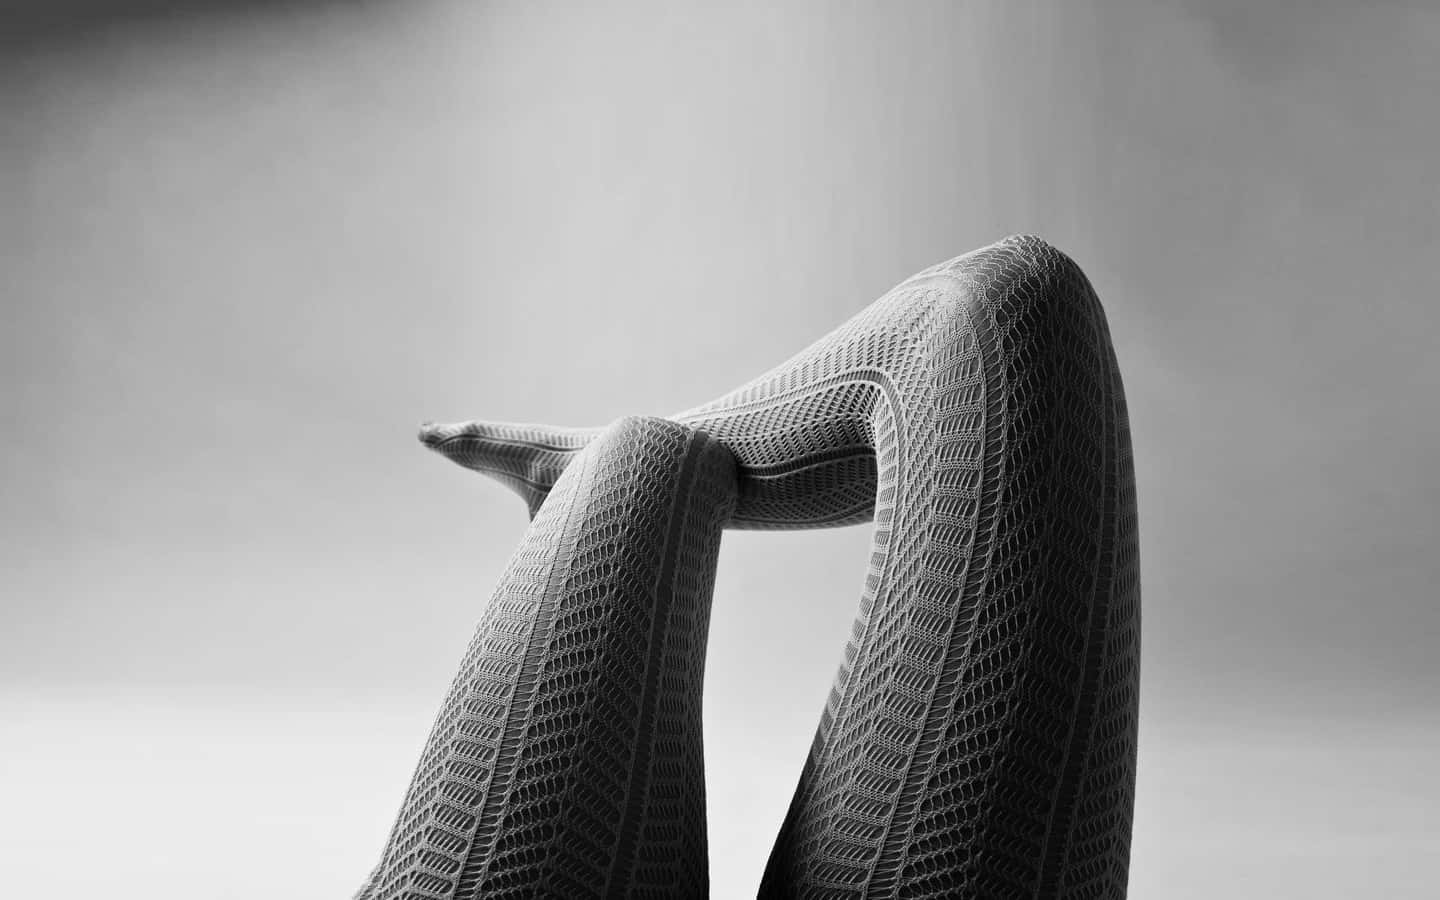 Elegant Legsin Fishnet Stockings Wallpaper